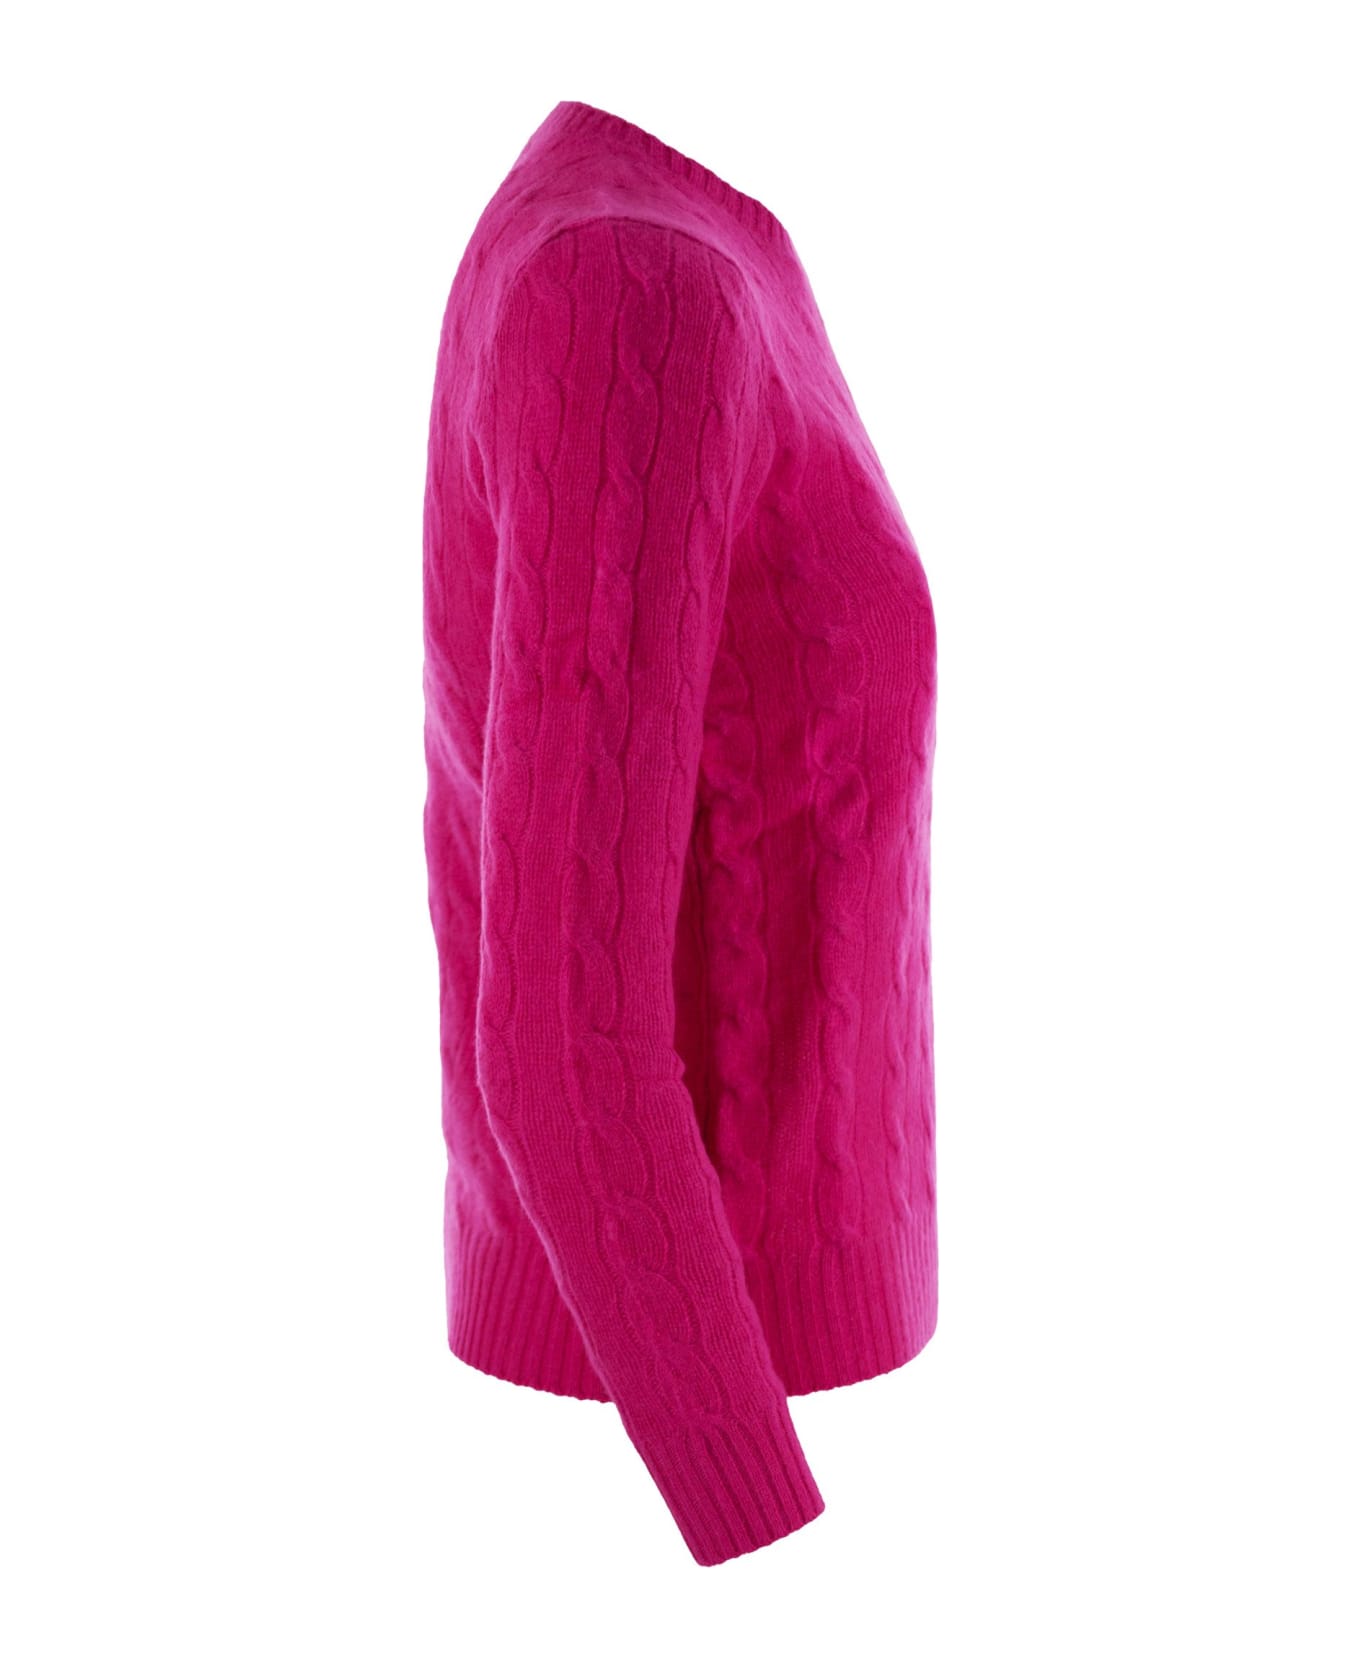 Polo Ralph Lauren Wool Blend Sweater - Fuchsia